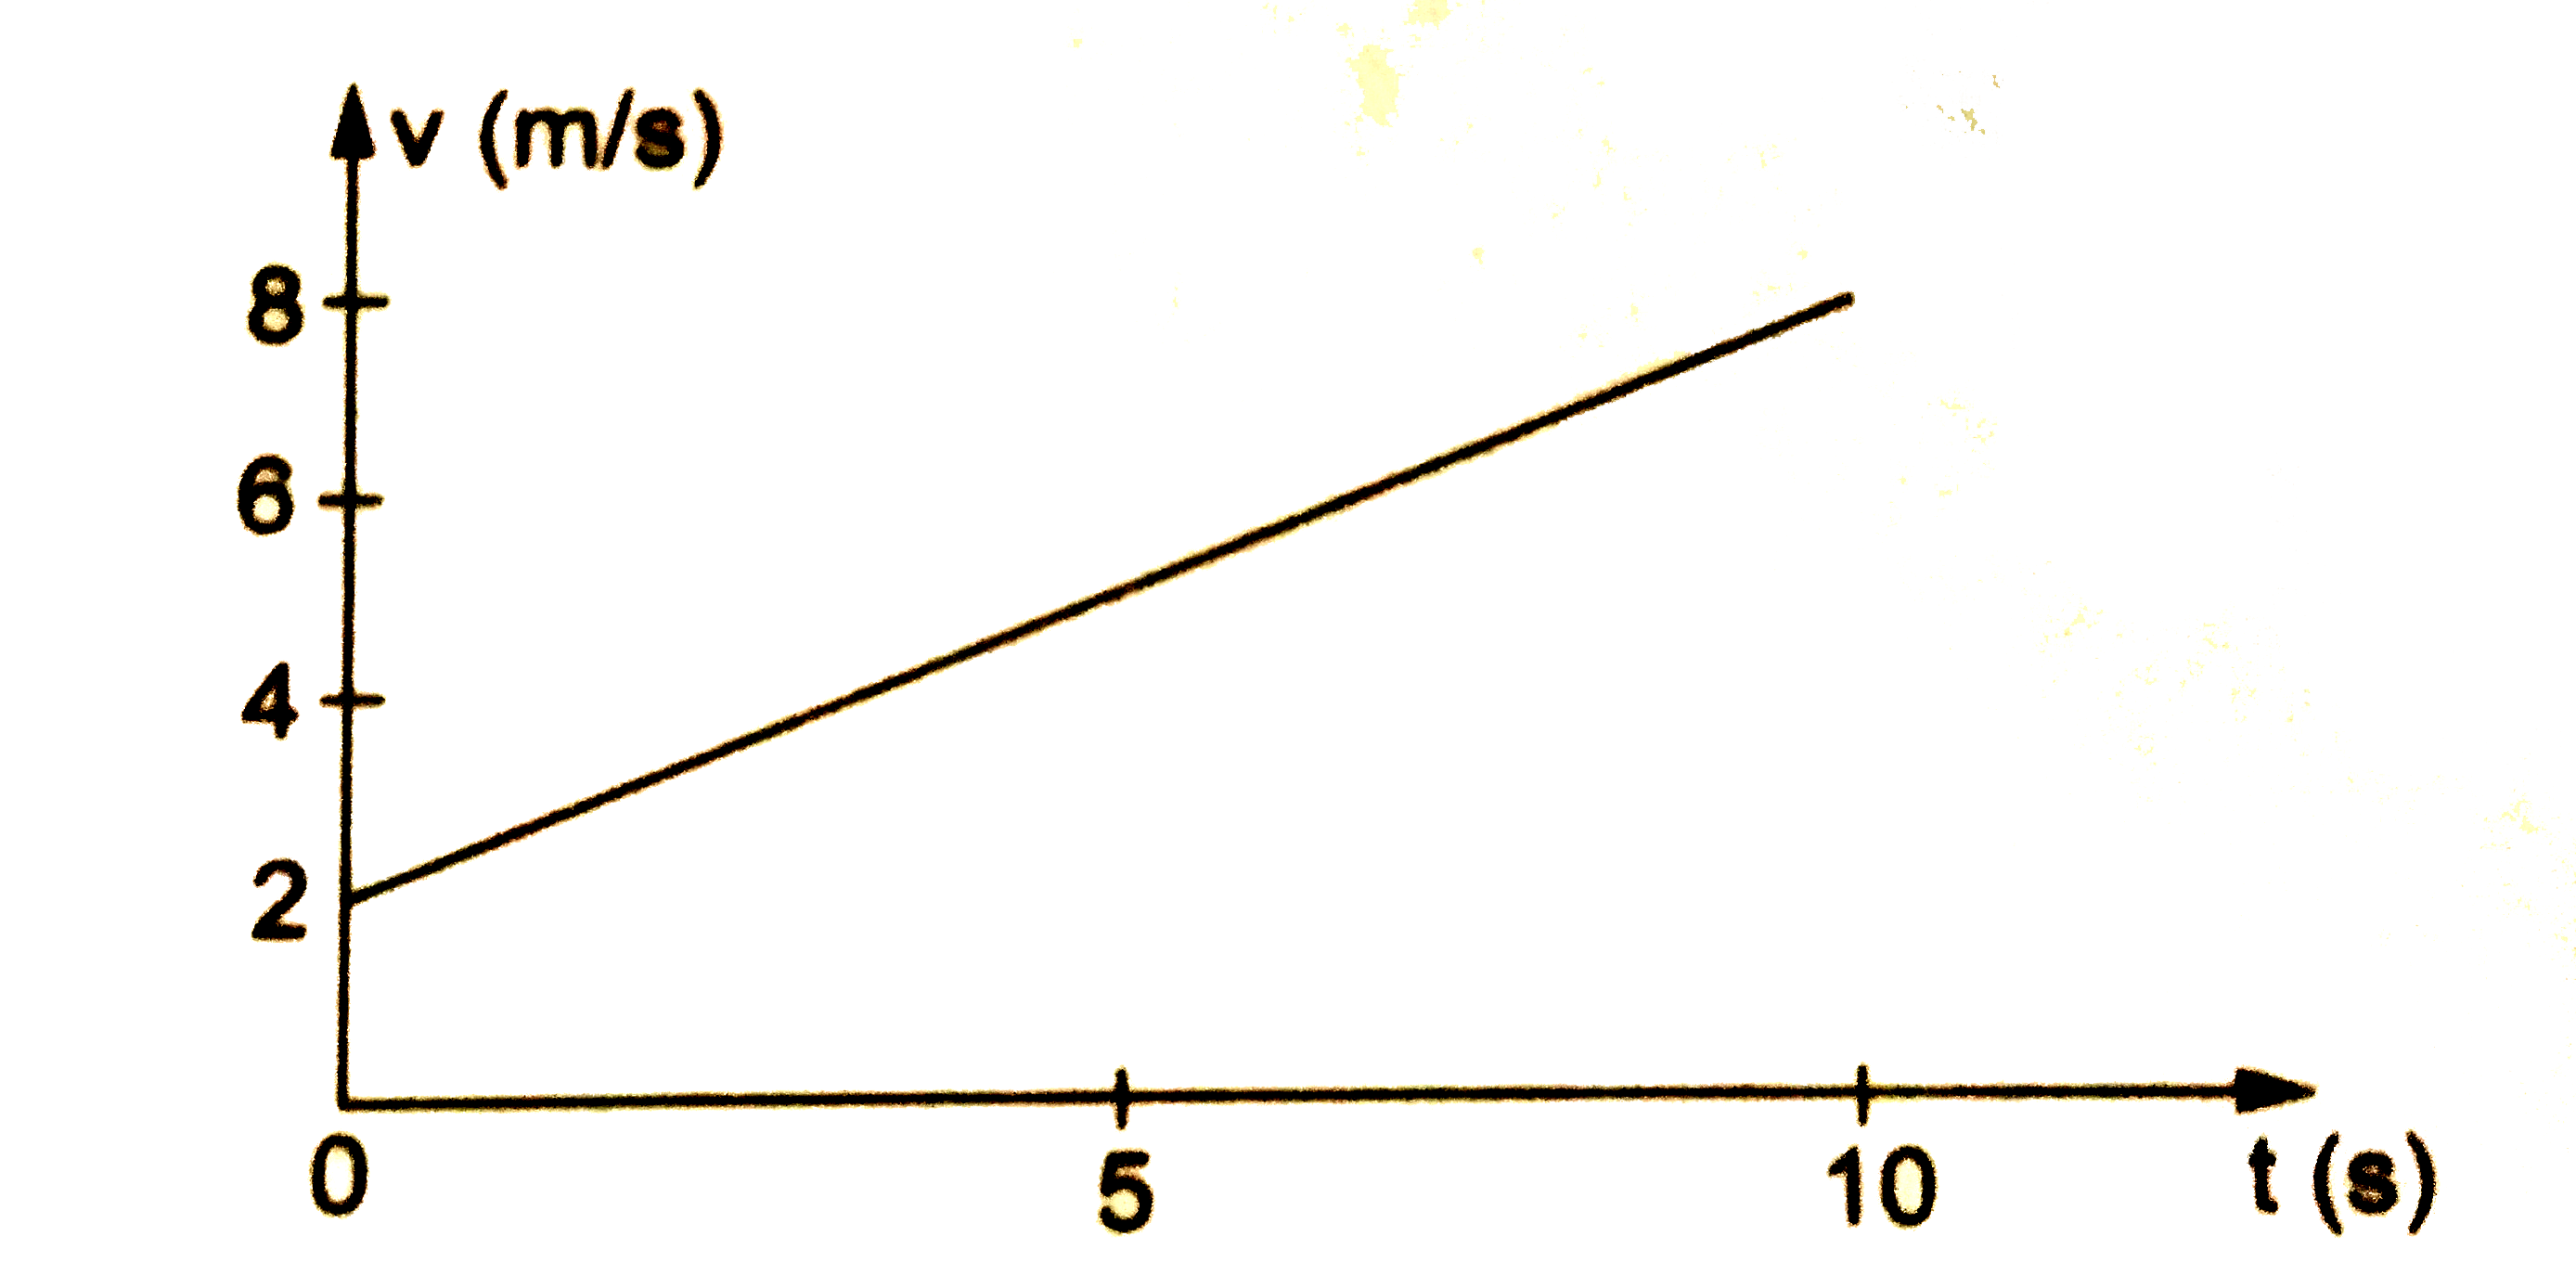 चित्र  में x  - अक्ष  पर चलते  हुए  एक  कण का  वेग   -समय  ग्राफ   दिखाया  गया है |  (a)  कण का   त्वरण  निकले |  (b)  t  =  0   से   t =  10 s    के  बीच  चली  गई  दुरी  तथा   (c)  t  =  0   से   t  = 10 s   के  अंतराल  में  विस्थापन  निकले |